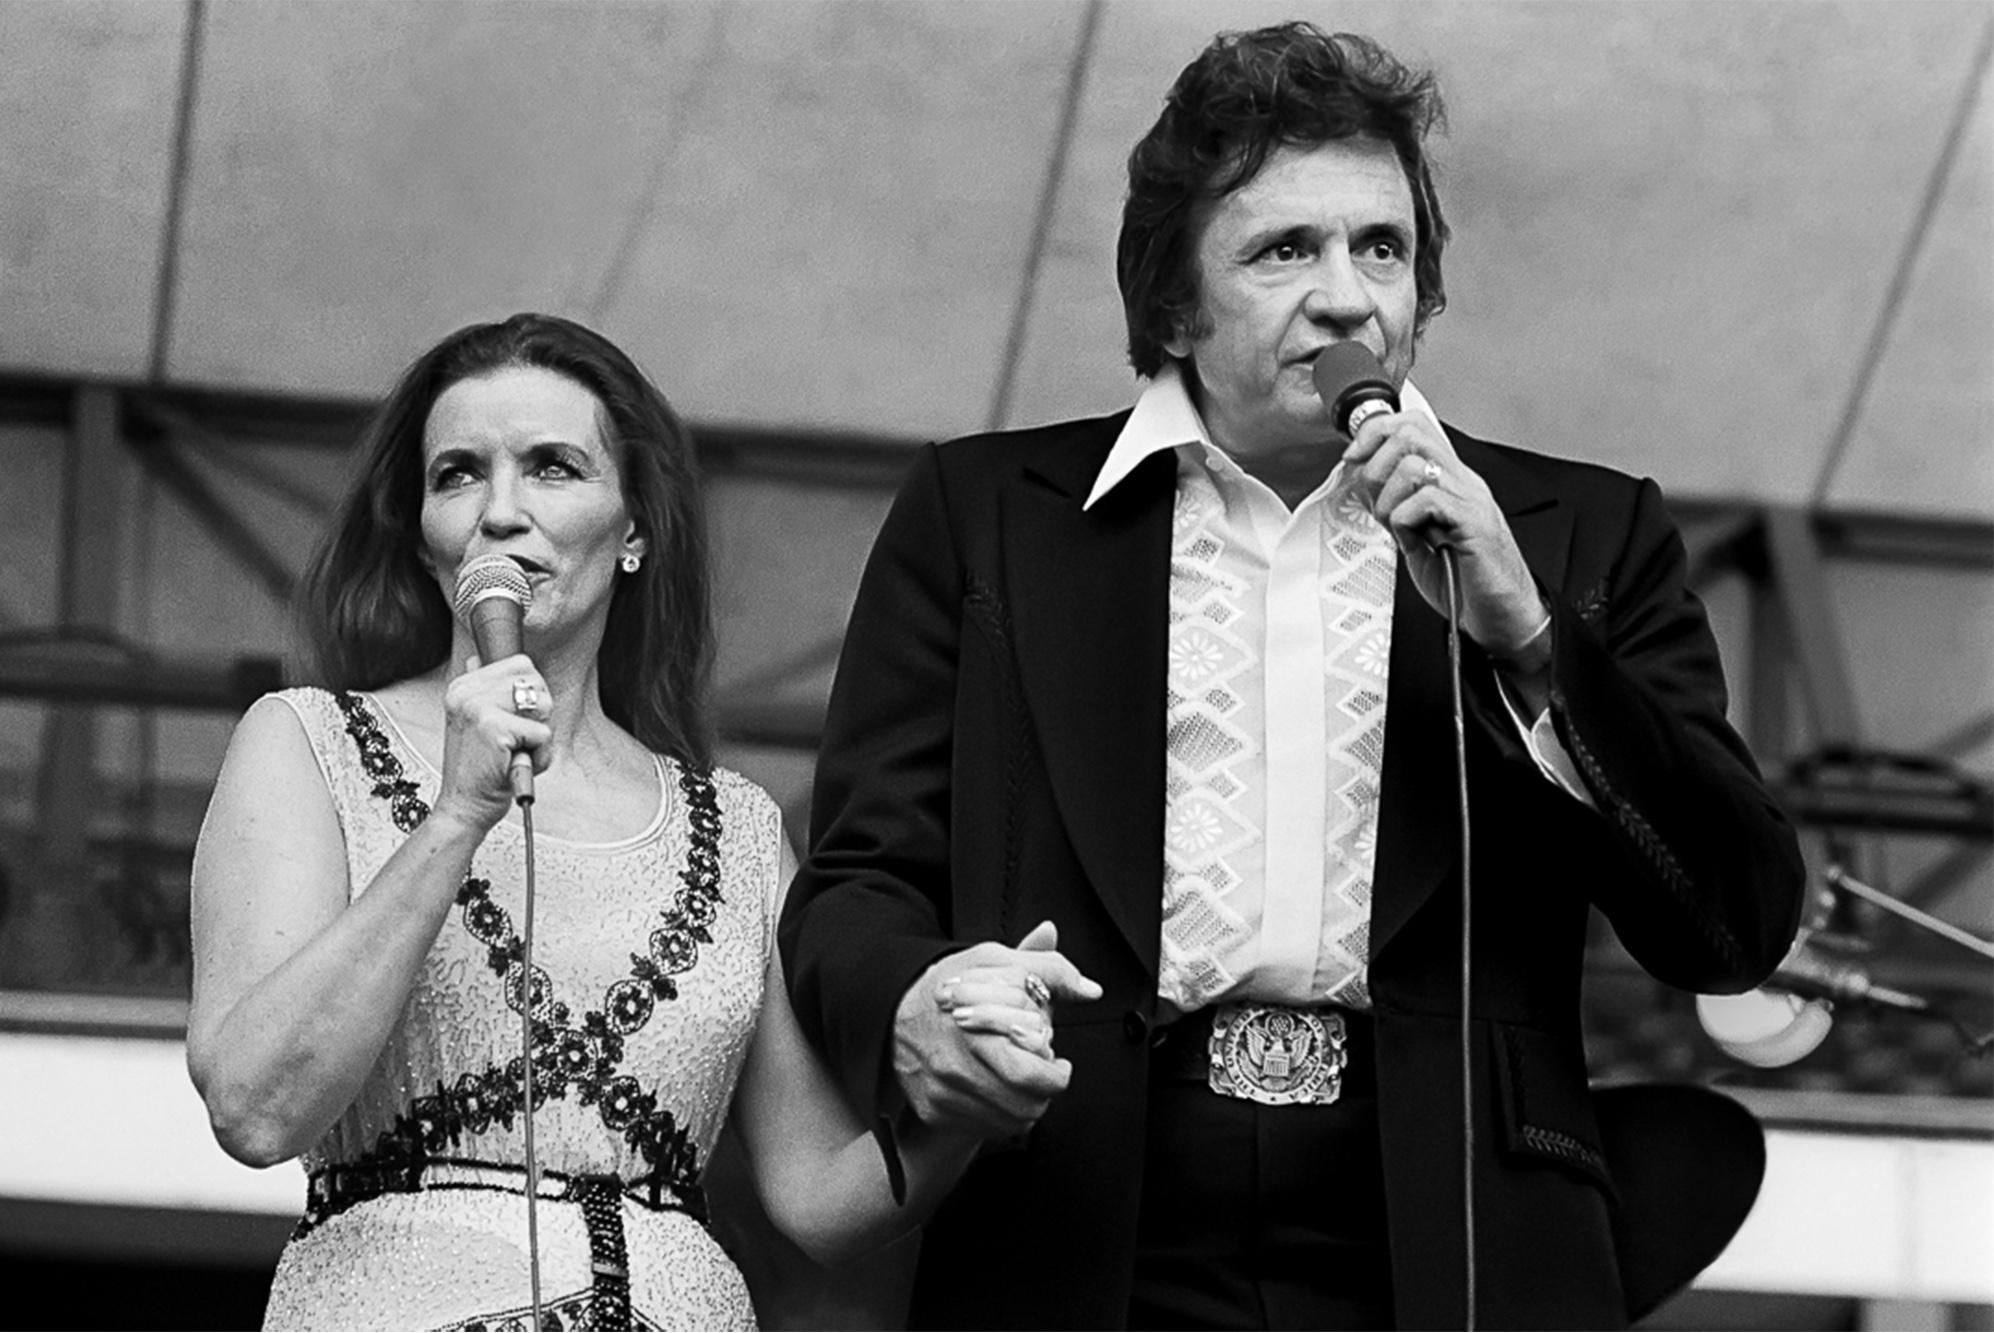 Signierter Druck in limitierter Auflage 16x20"" von June Carter und Johnny Cash, aufgenommen während eines Auftritts im Jahr 1980 von Lynn Goldsmith.

Limitierte Auflage Nummer 2/20

Moderner C-Typ-Druck. Sofort versandbereit.

Lynn Goldsmith hat